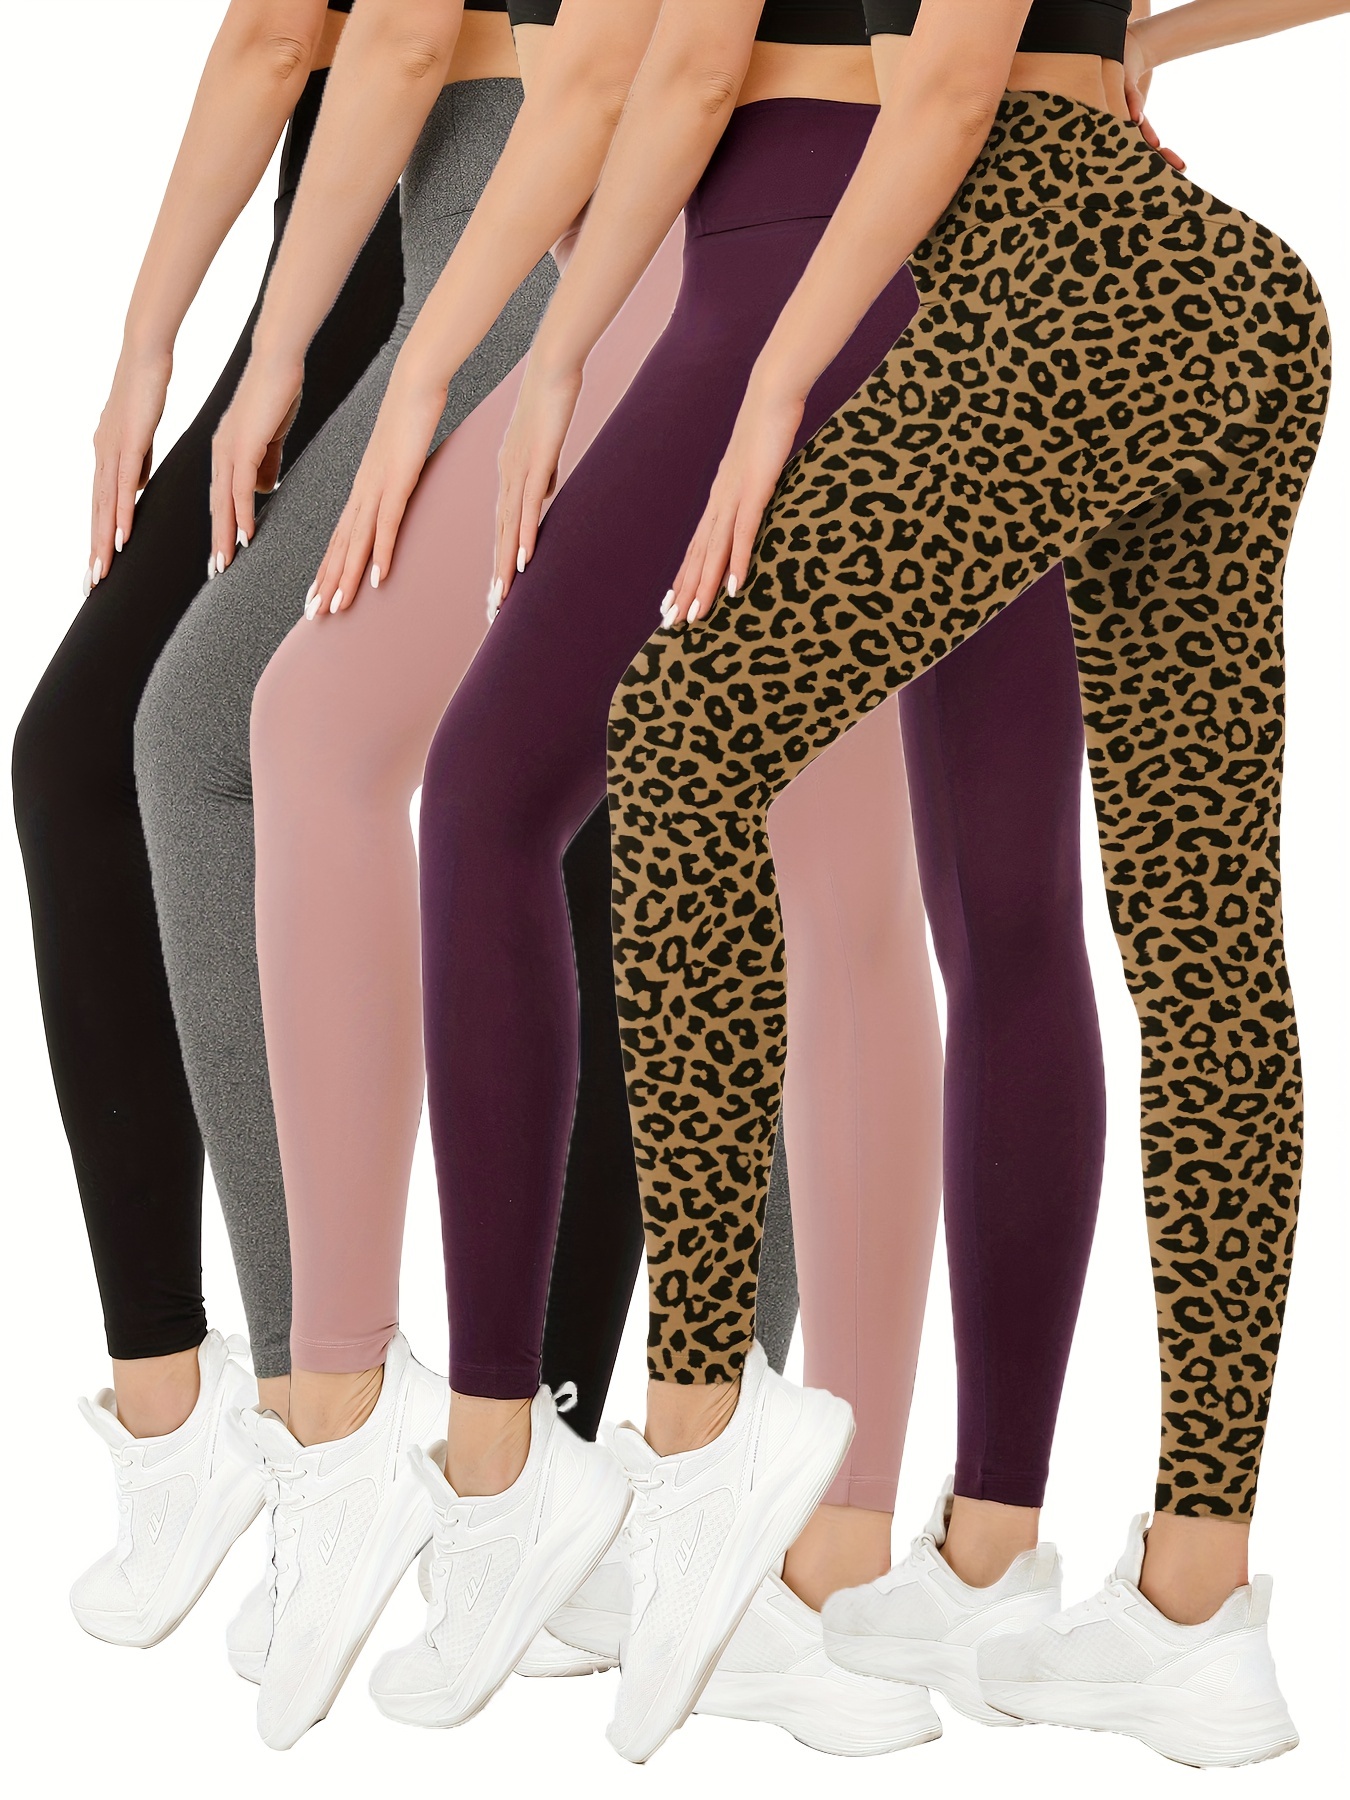  TNNZEET High Waisted Pattern Leggings For Women